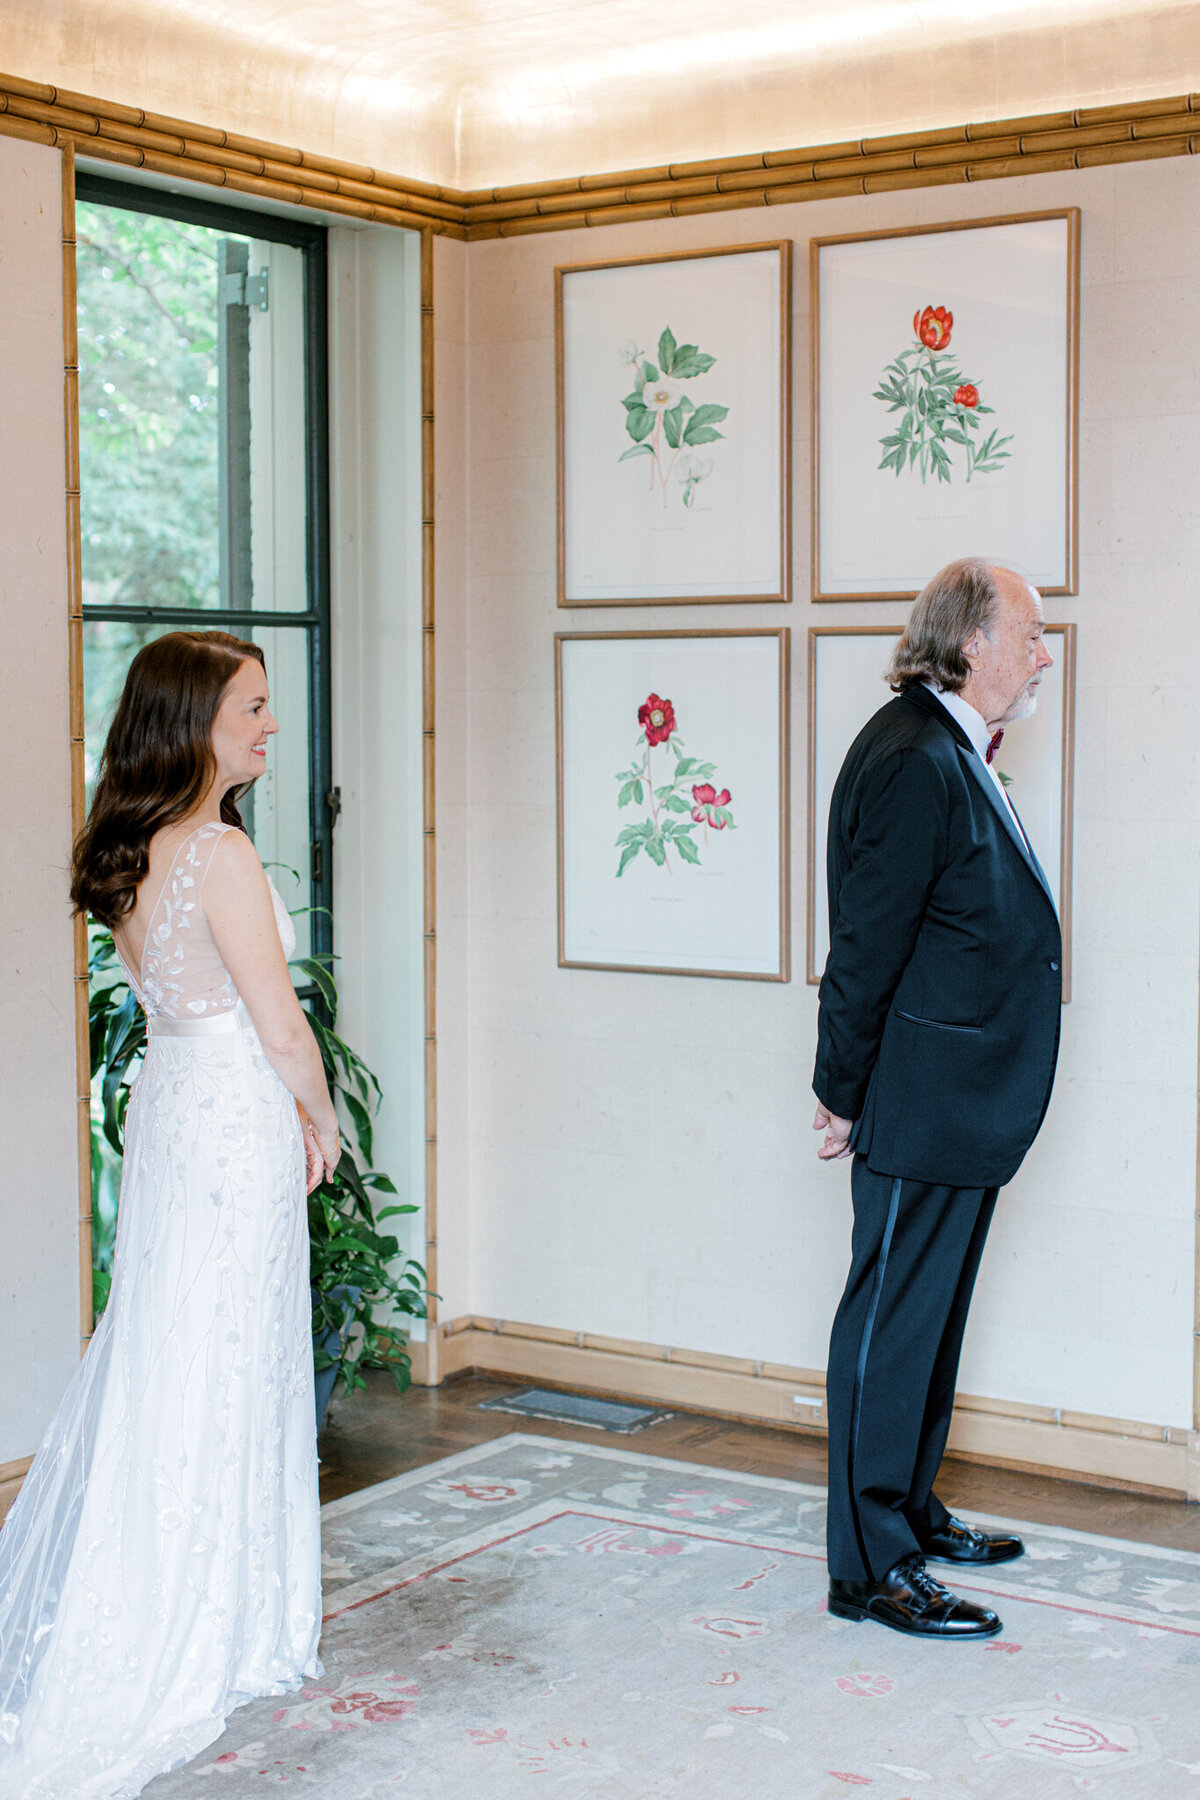 Gena & Matt's Wedding at the Dallas Arboretum | Dallas Wedding Photographer | Sami Kathryn Photography-57